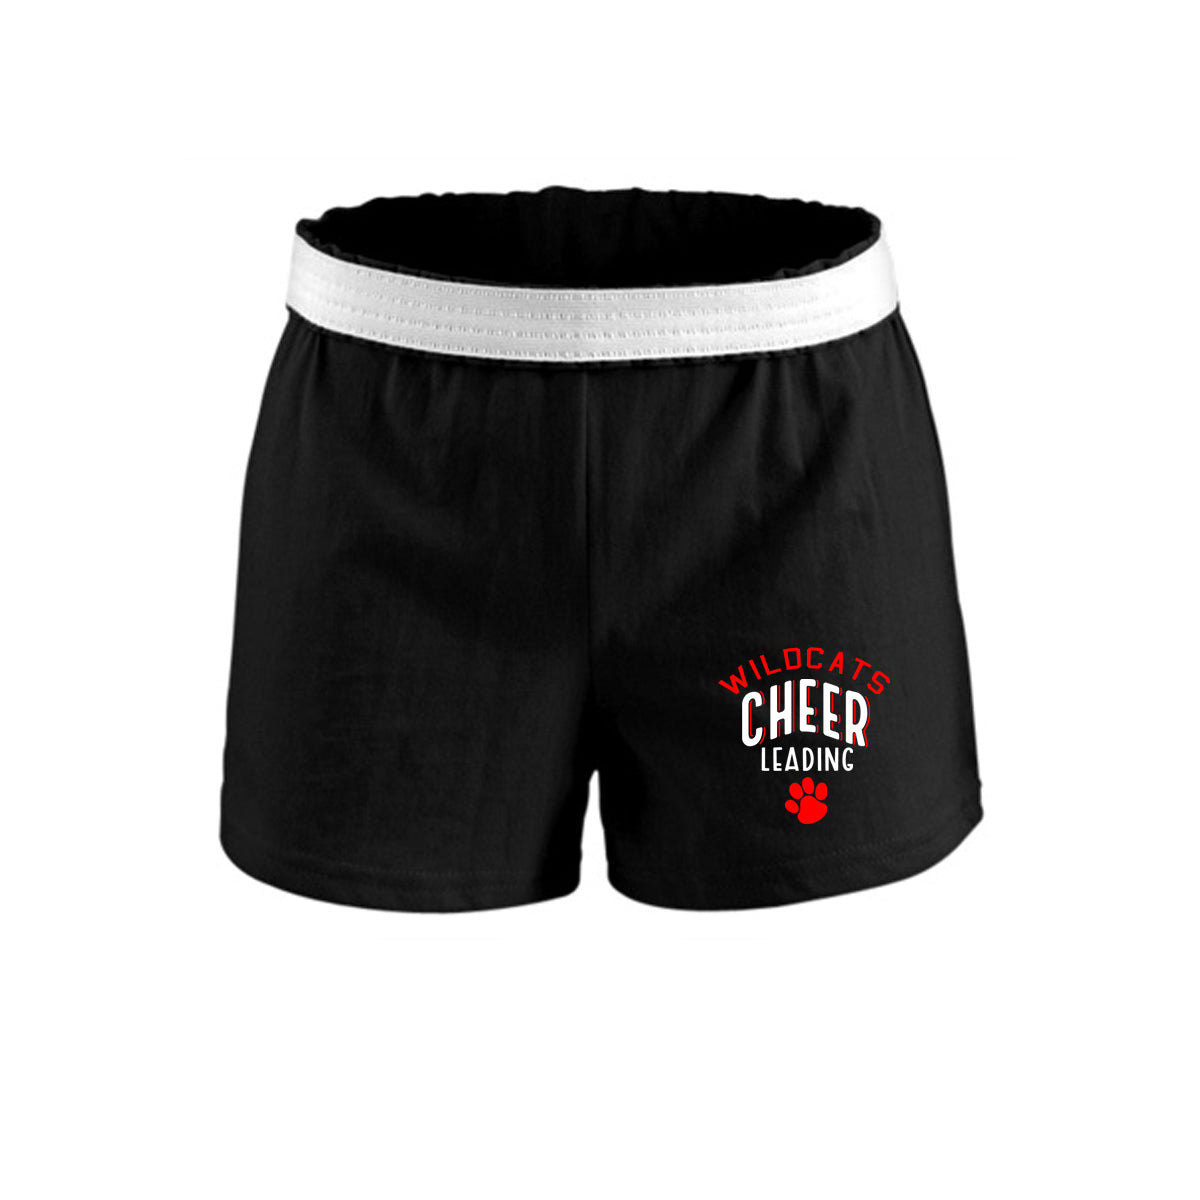 Wildcats Cheer Design 5 Shorts